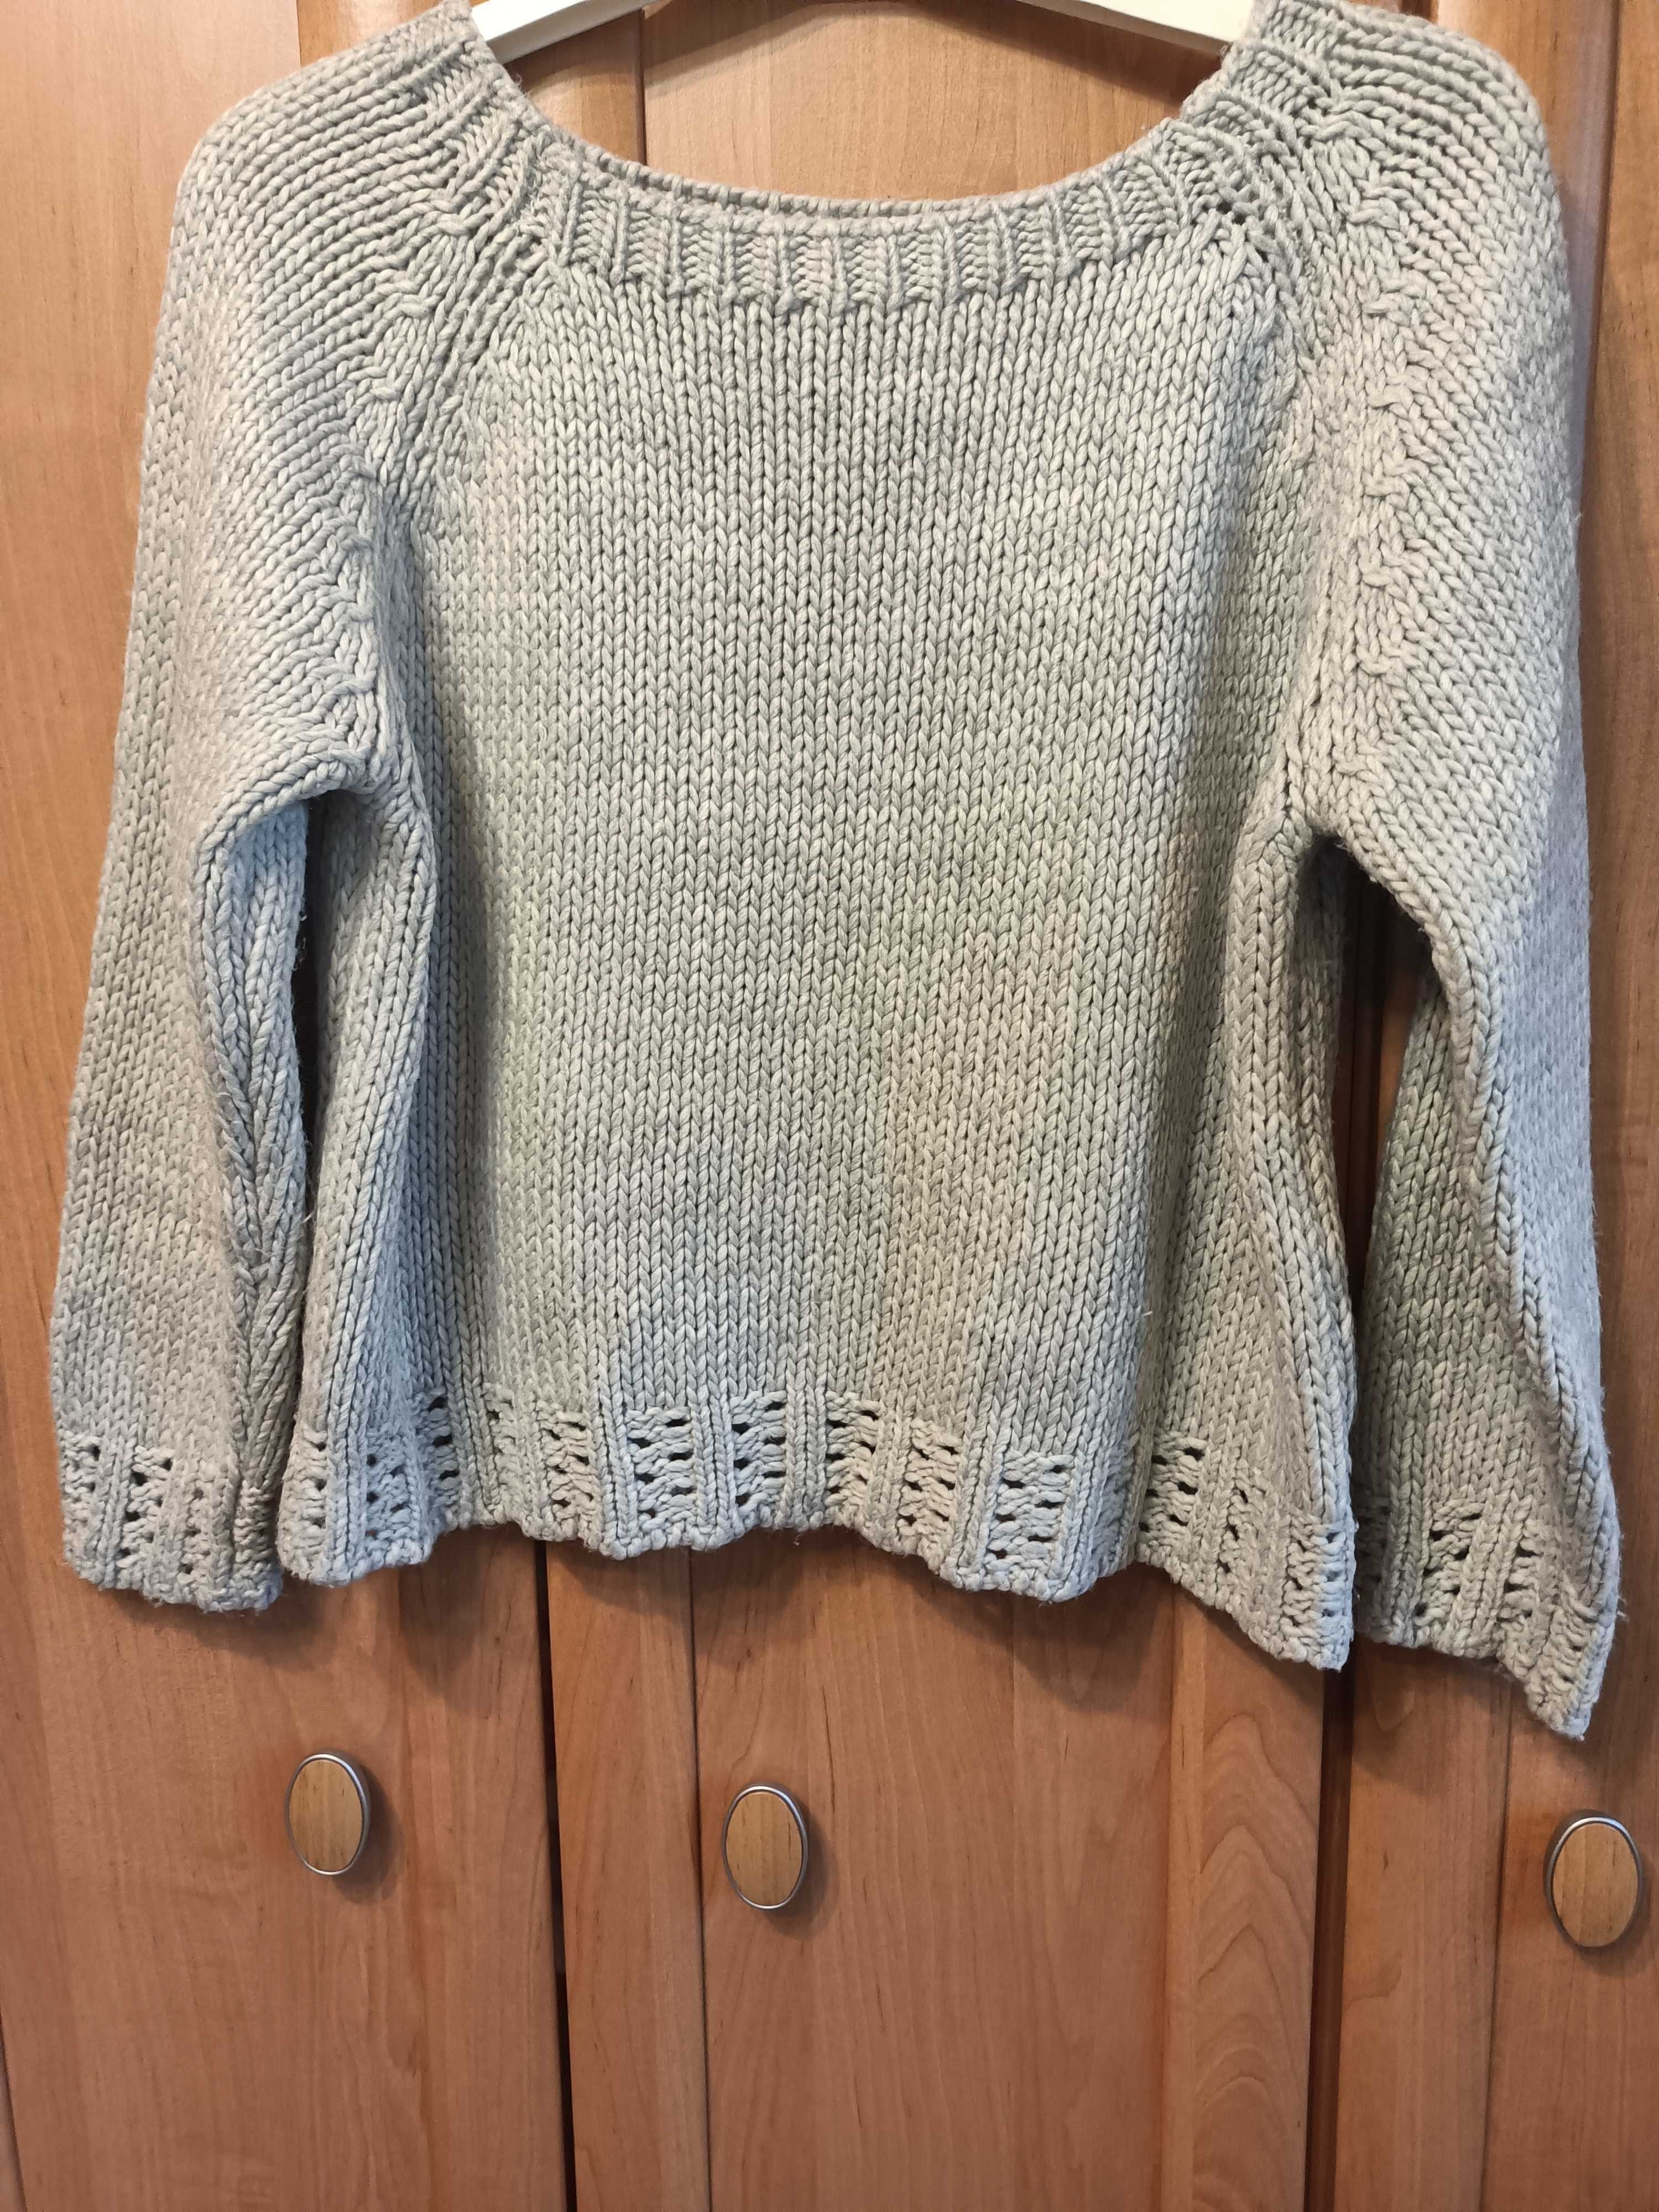 Szary sweter, rozmiar S